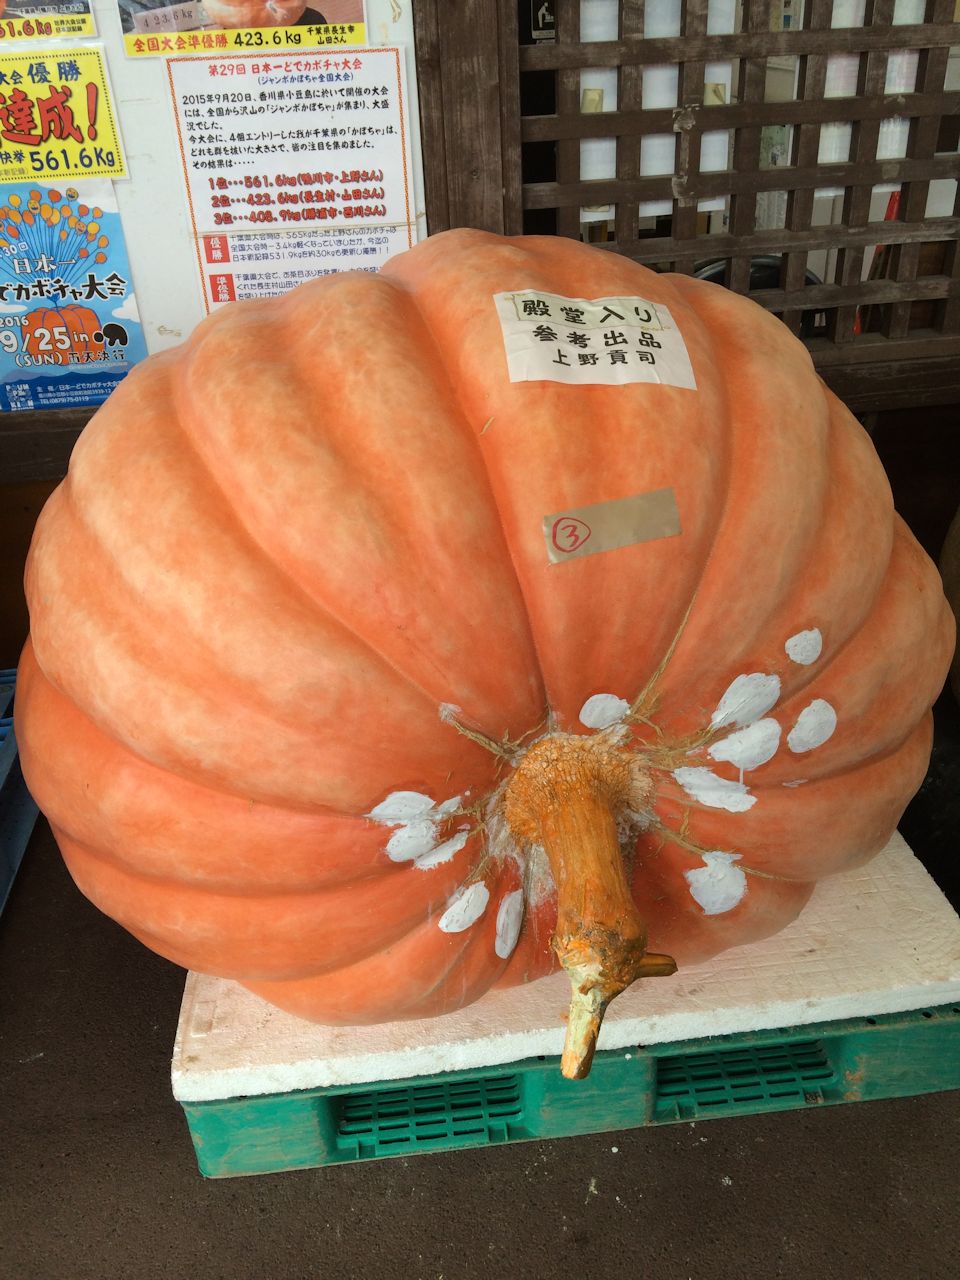 Pichori 巨大かぼちゃコンテスト